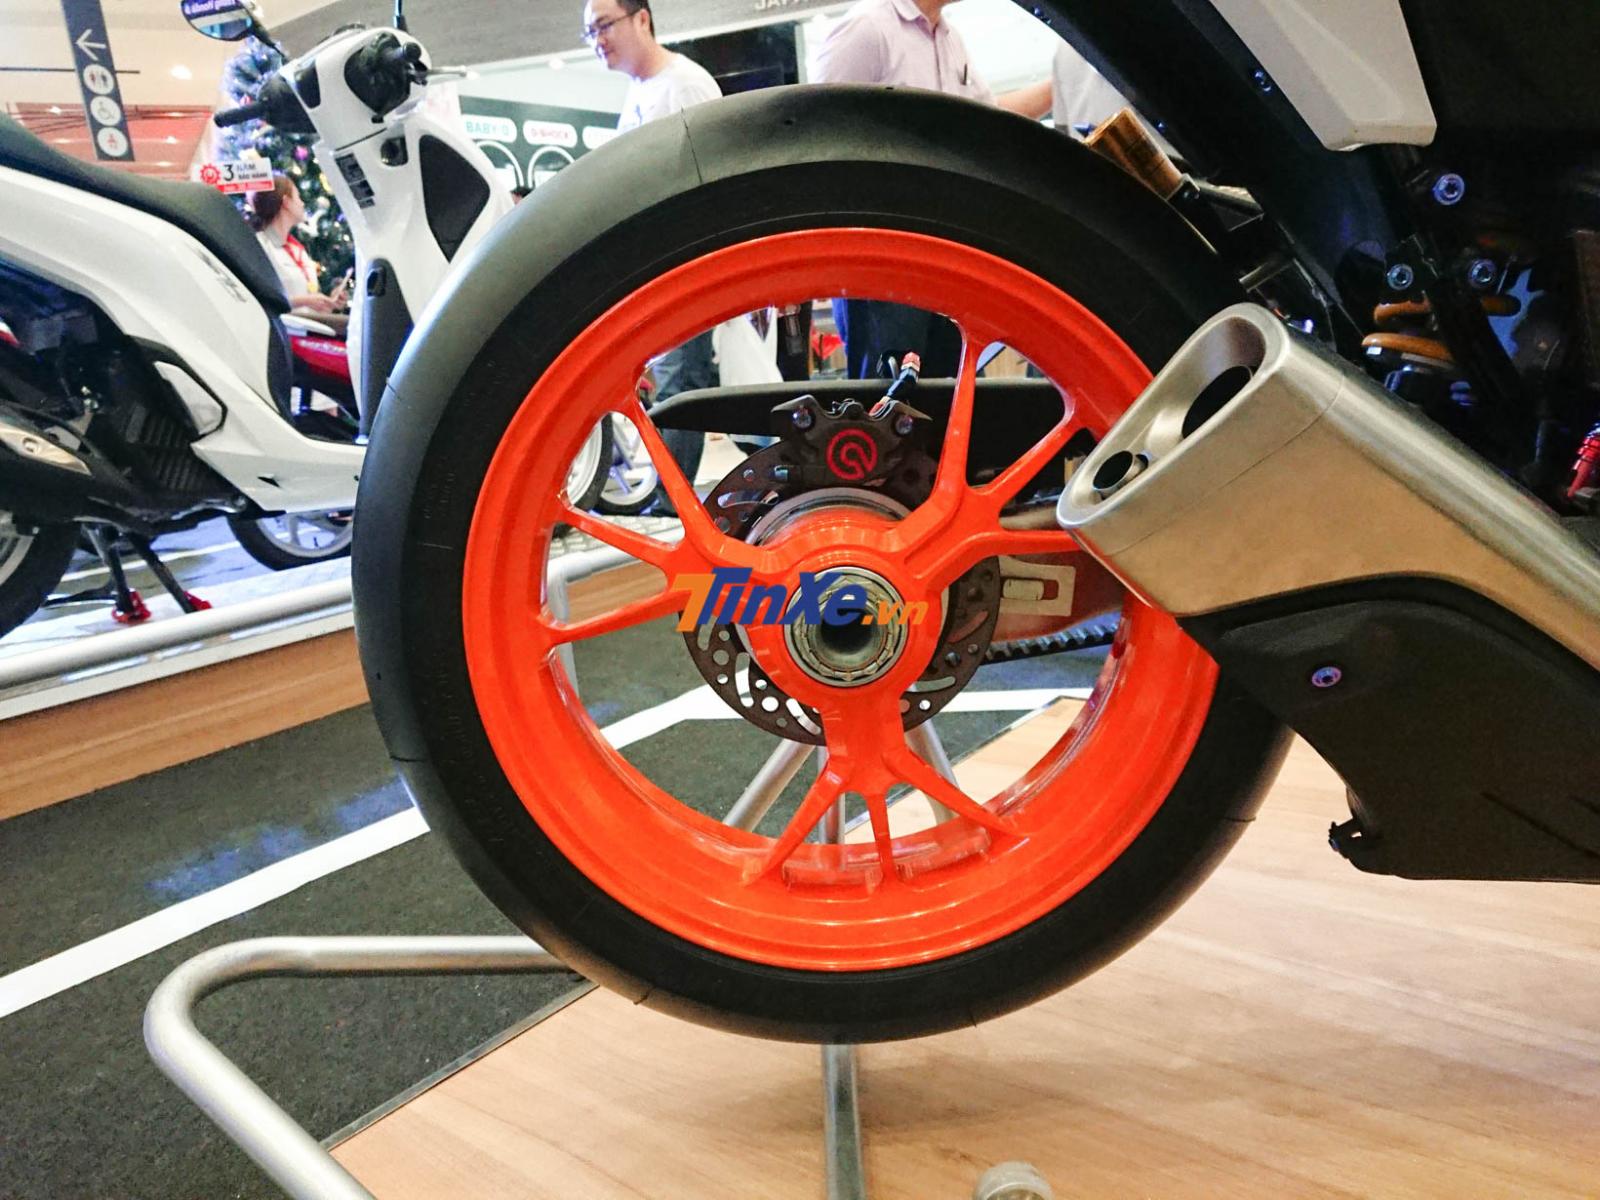 Bộ mâm là của siêu mô tô Ducati 1199 Panigale được sơn màu cam nổi bật